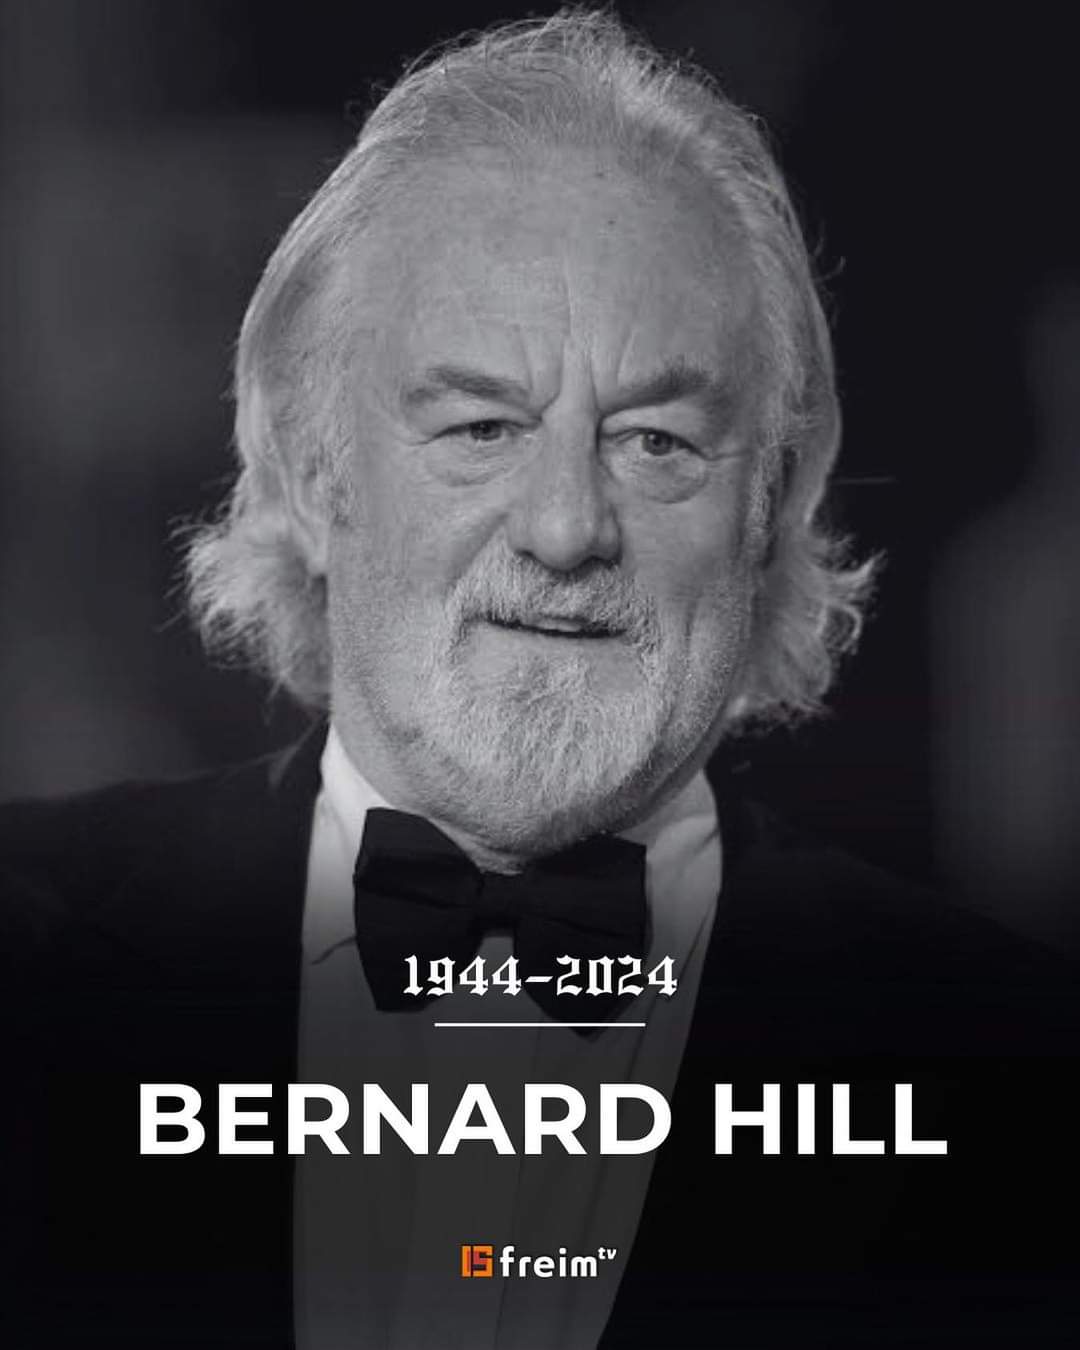 Descanse en paz Bernard HillBernard Hill